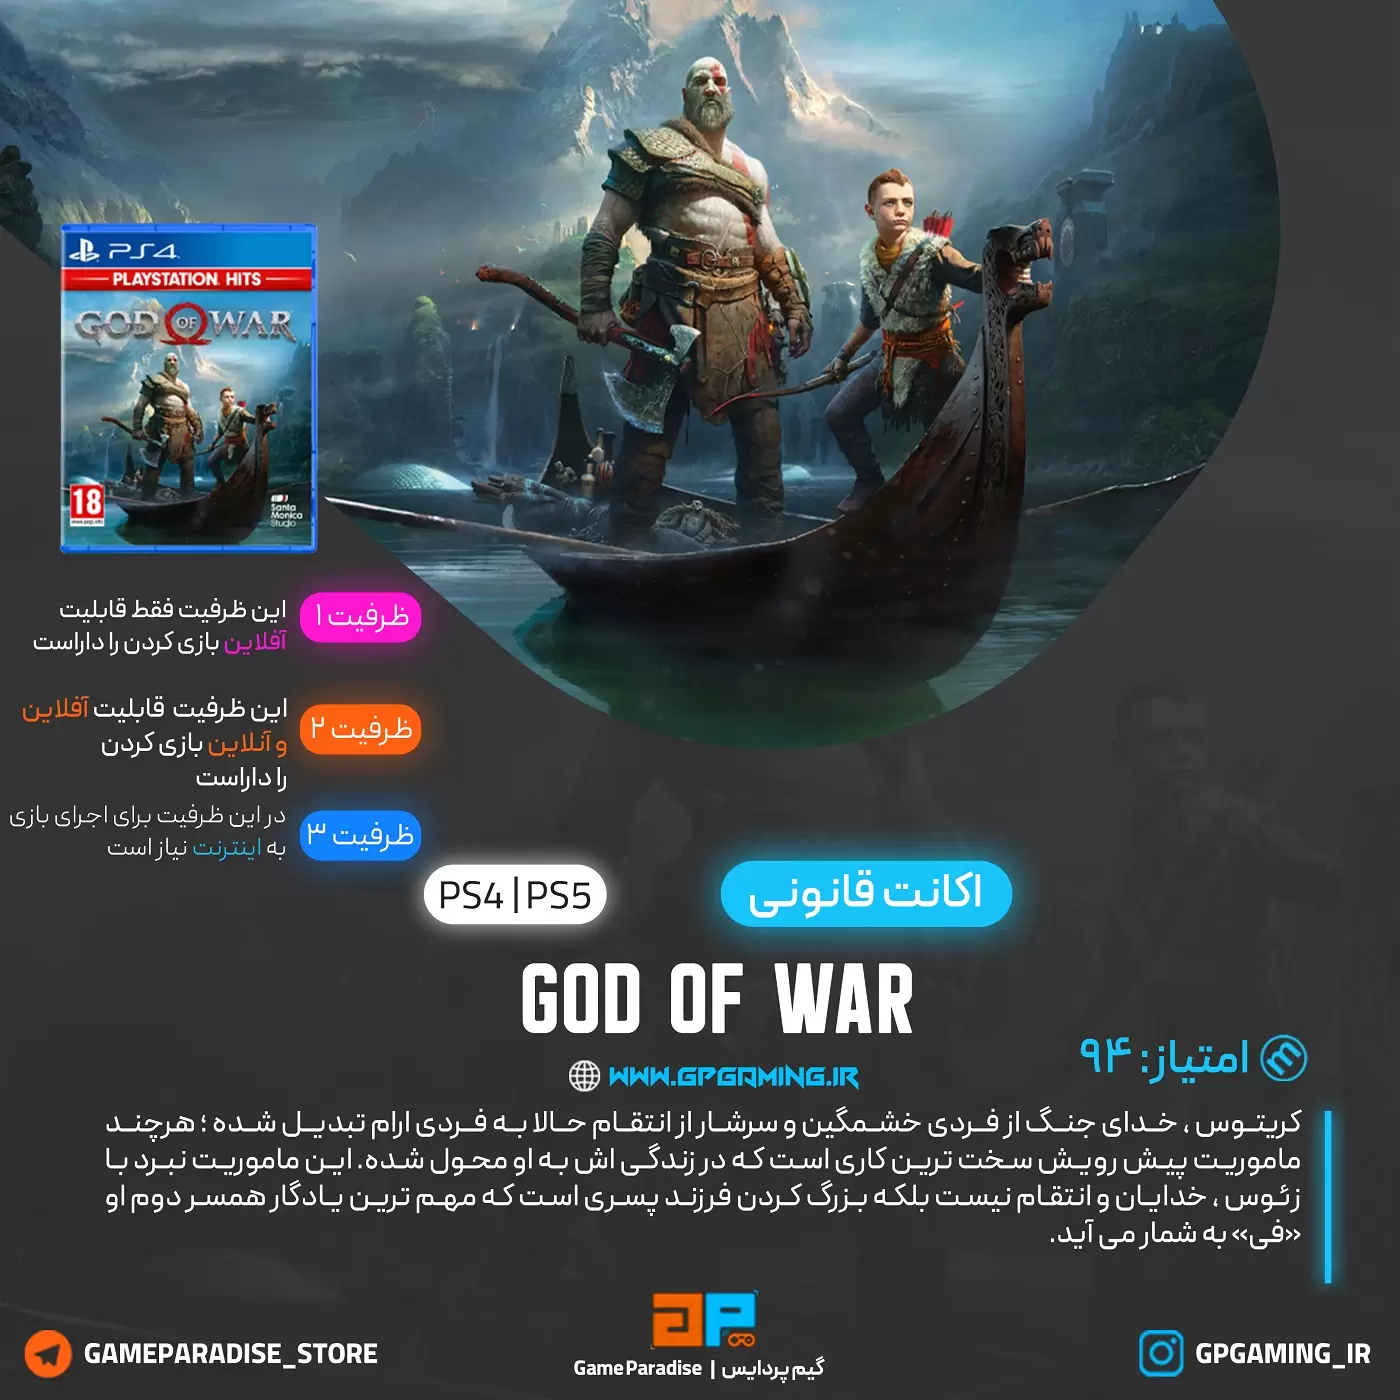  اکانت قانونی God of War برای PS4 & PS5 